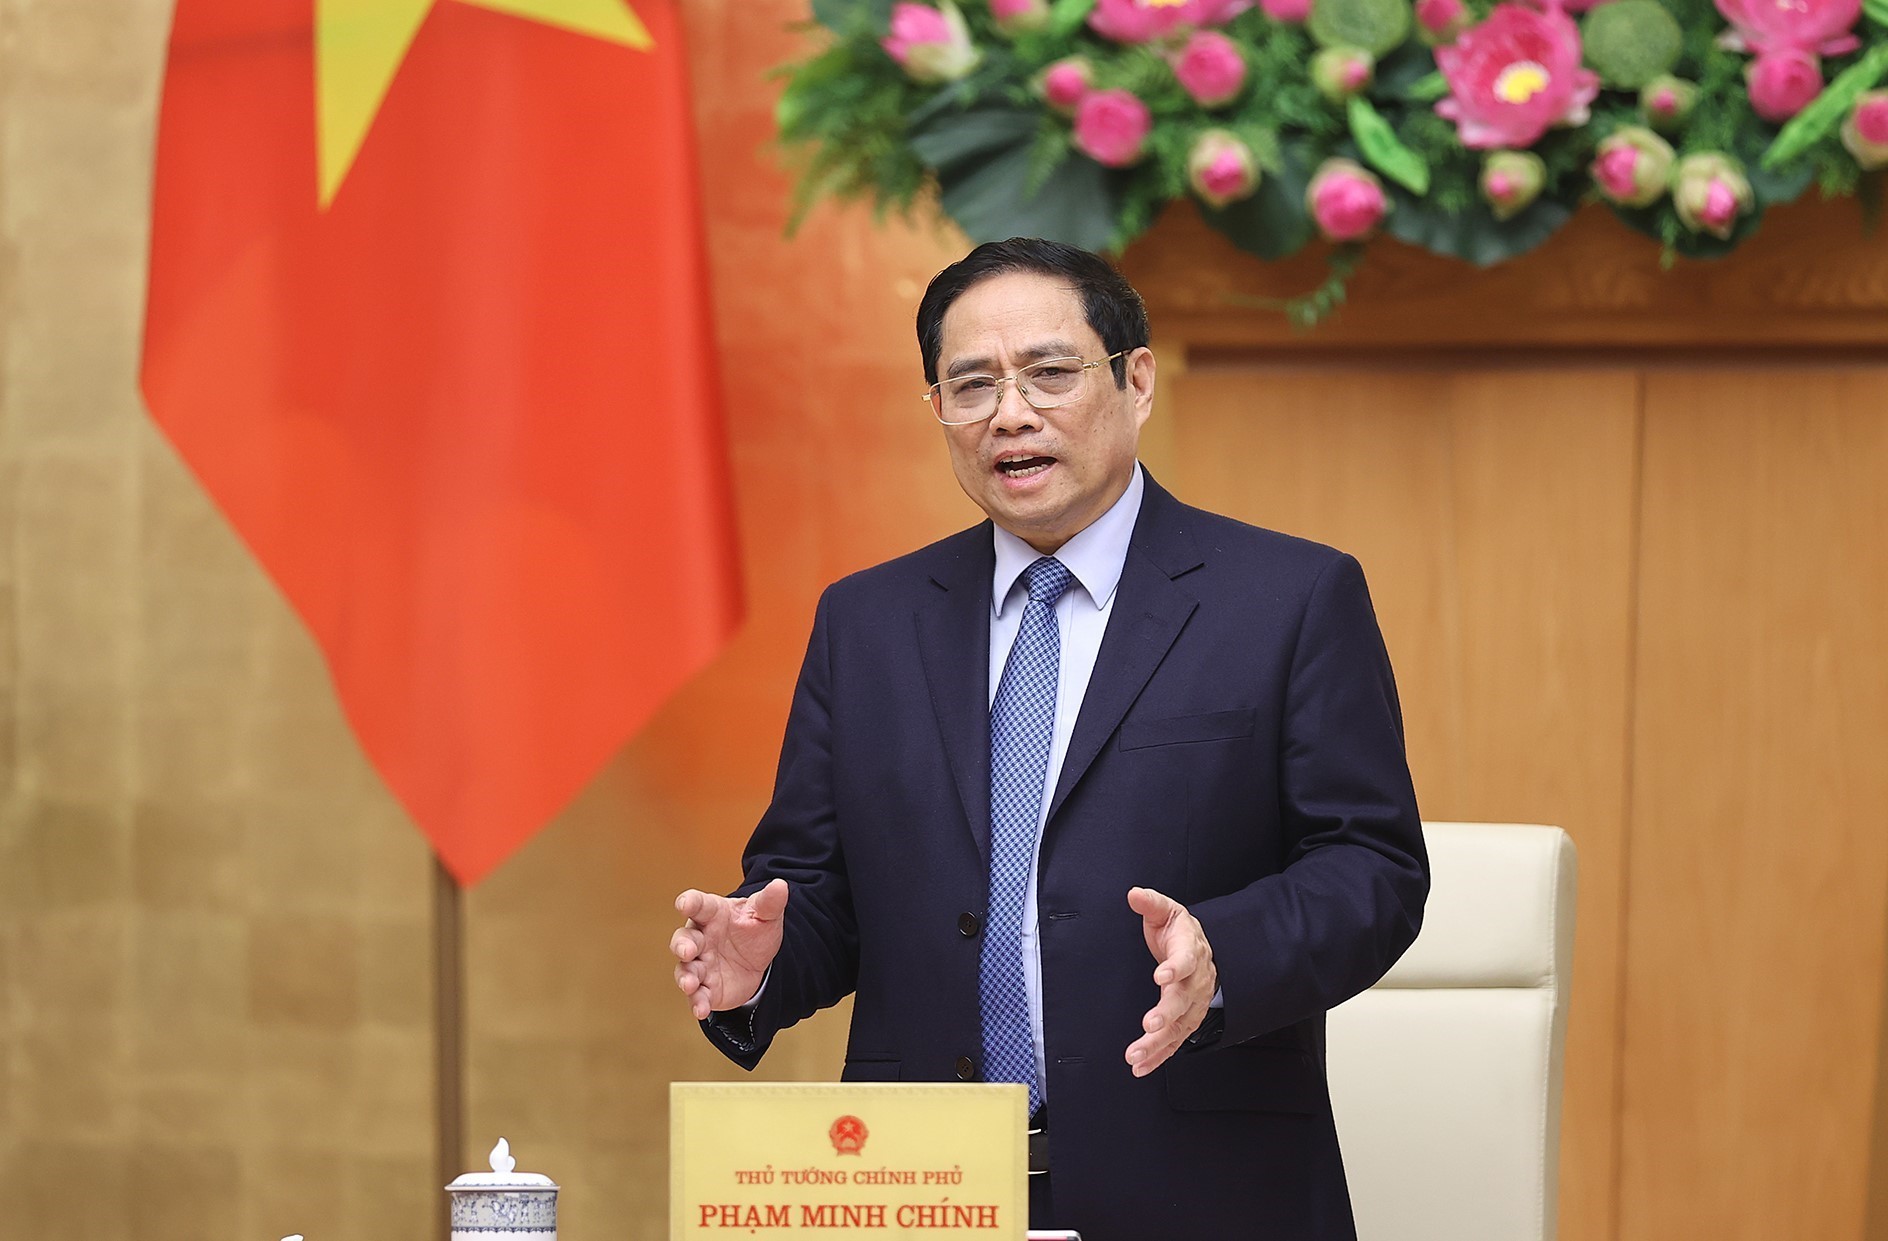 Thủ tướng Phạm Minh Chính phát biểu kết luận phiên họp.  Ảnh: DƯƠNG GIANG